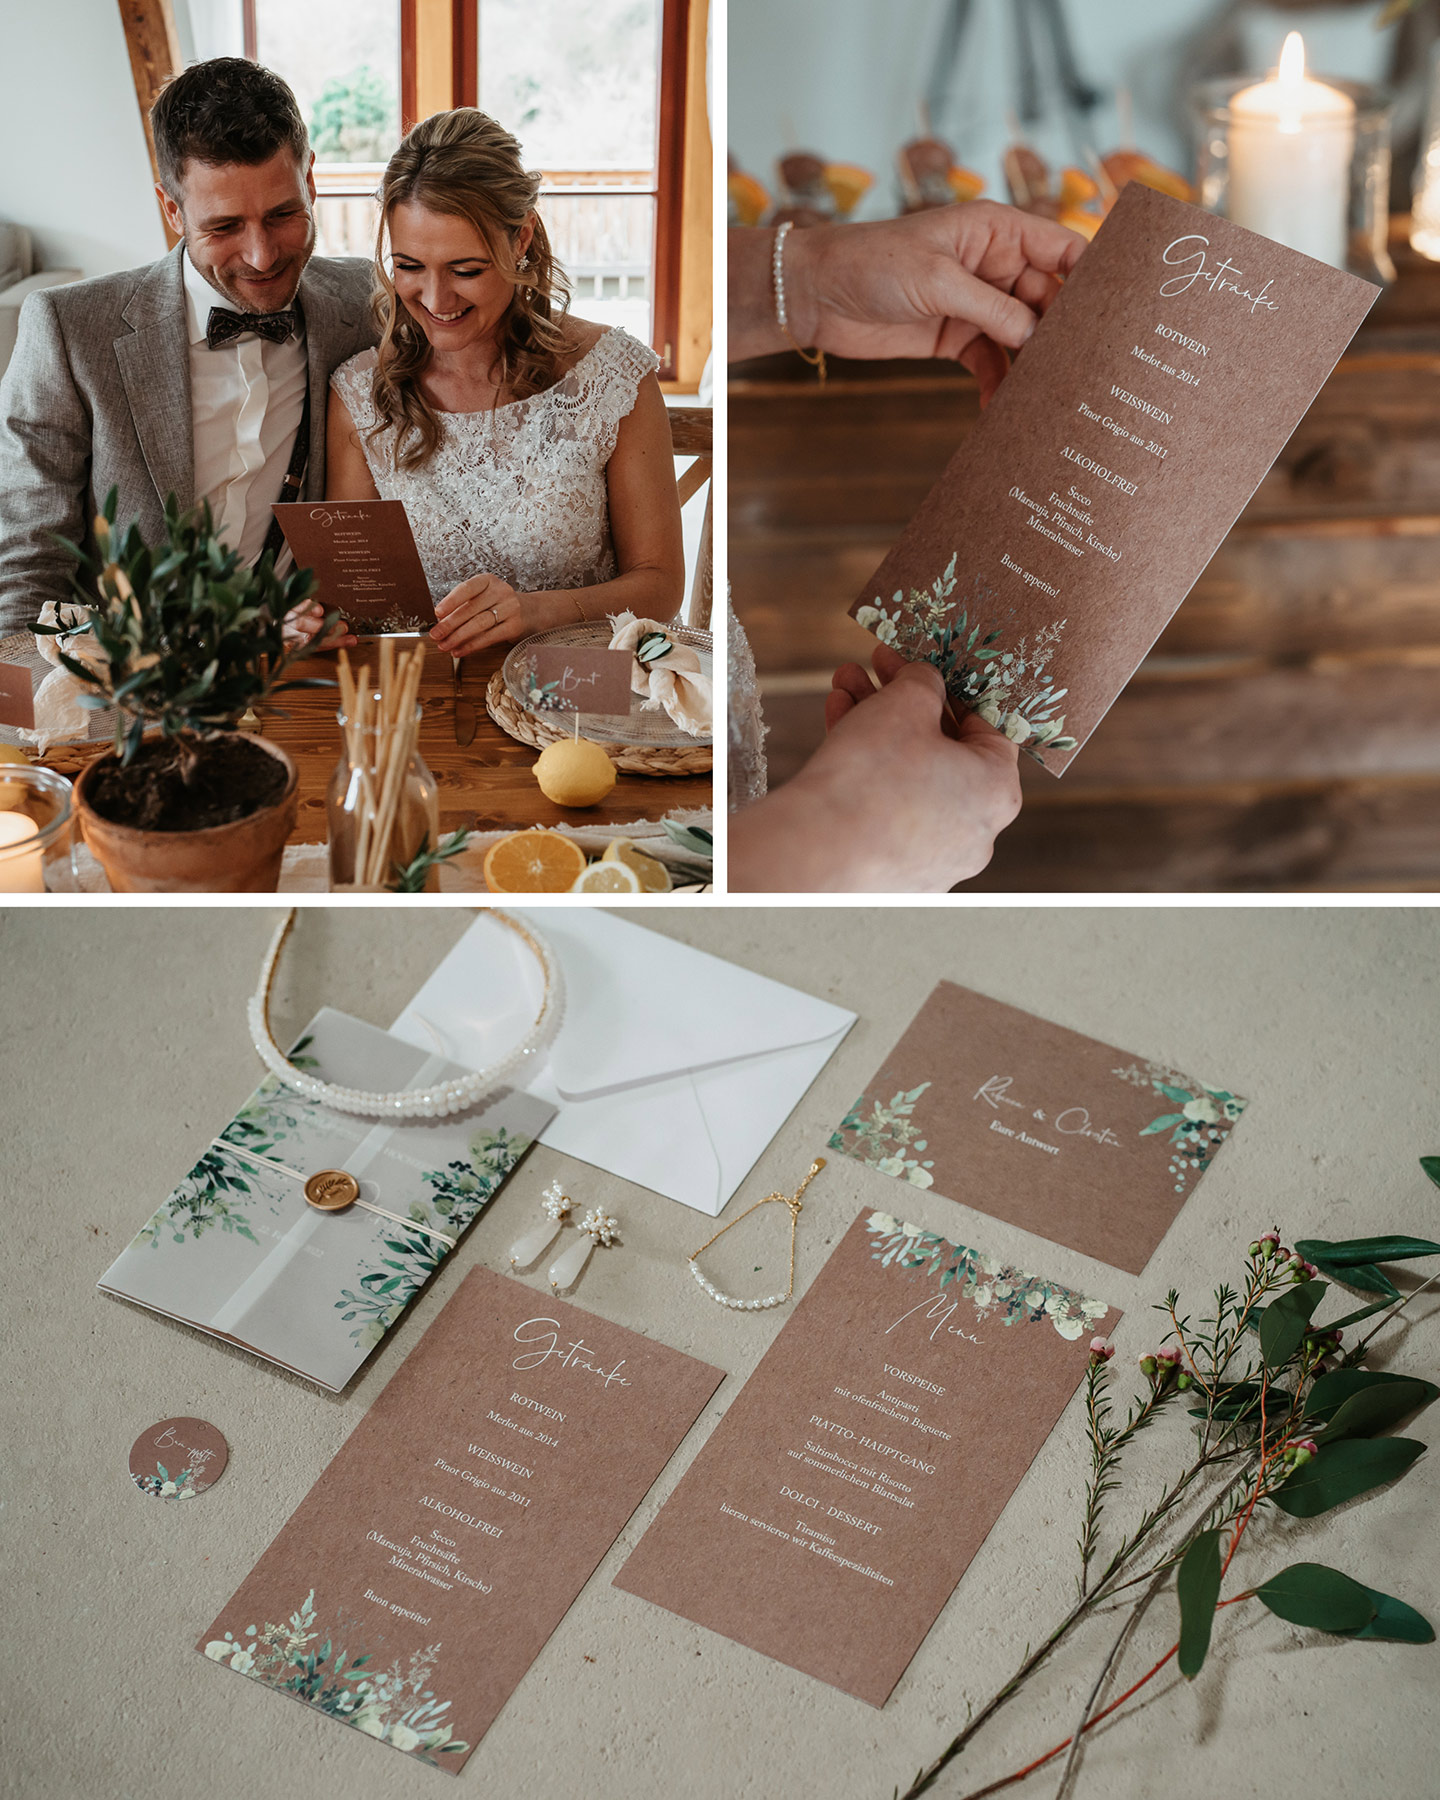 Die gesamte Hochzeitspapeterie, von Menükarte über Hochzeitseinladung bin hin zu den Antwortkarten ist im rustikalen Stil gehalten. Olivenzweige, Schleierkraut und Eukalyptus zieren das Design. 